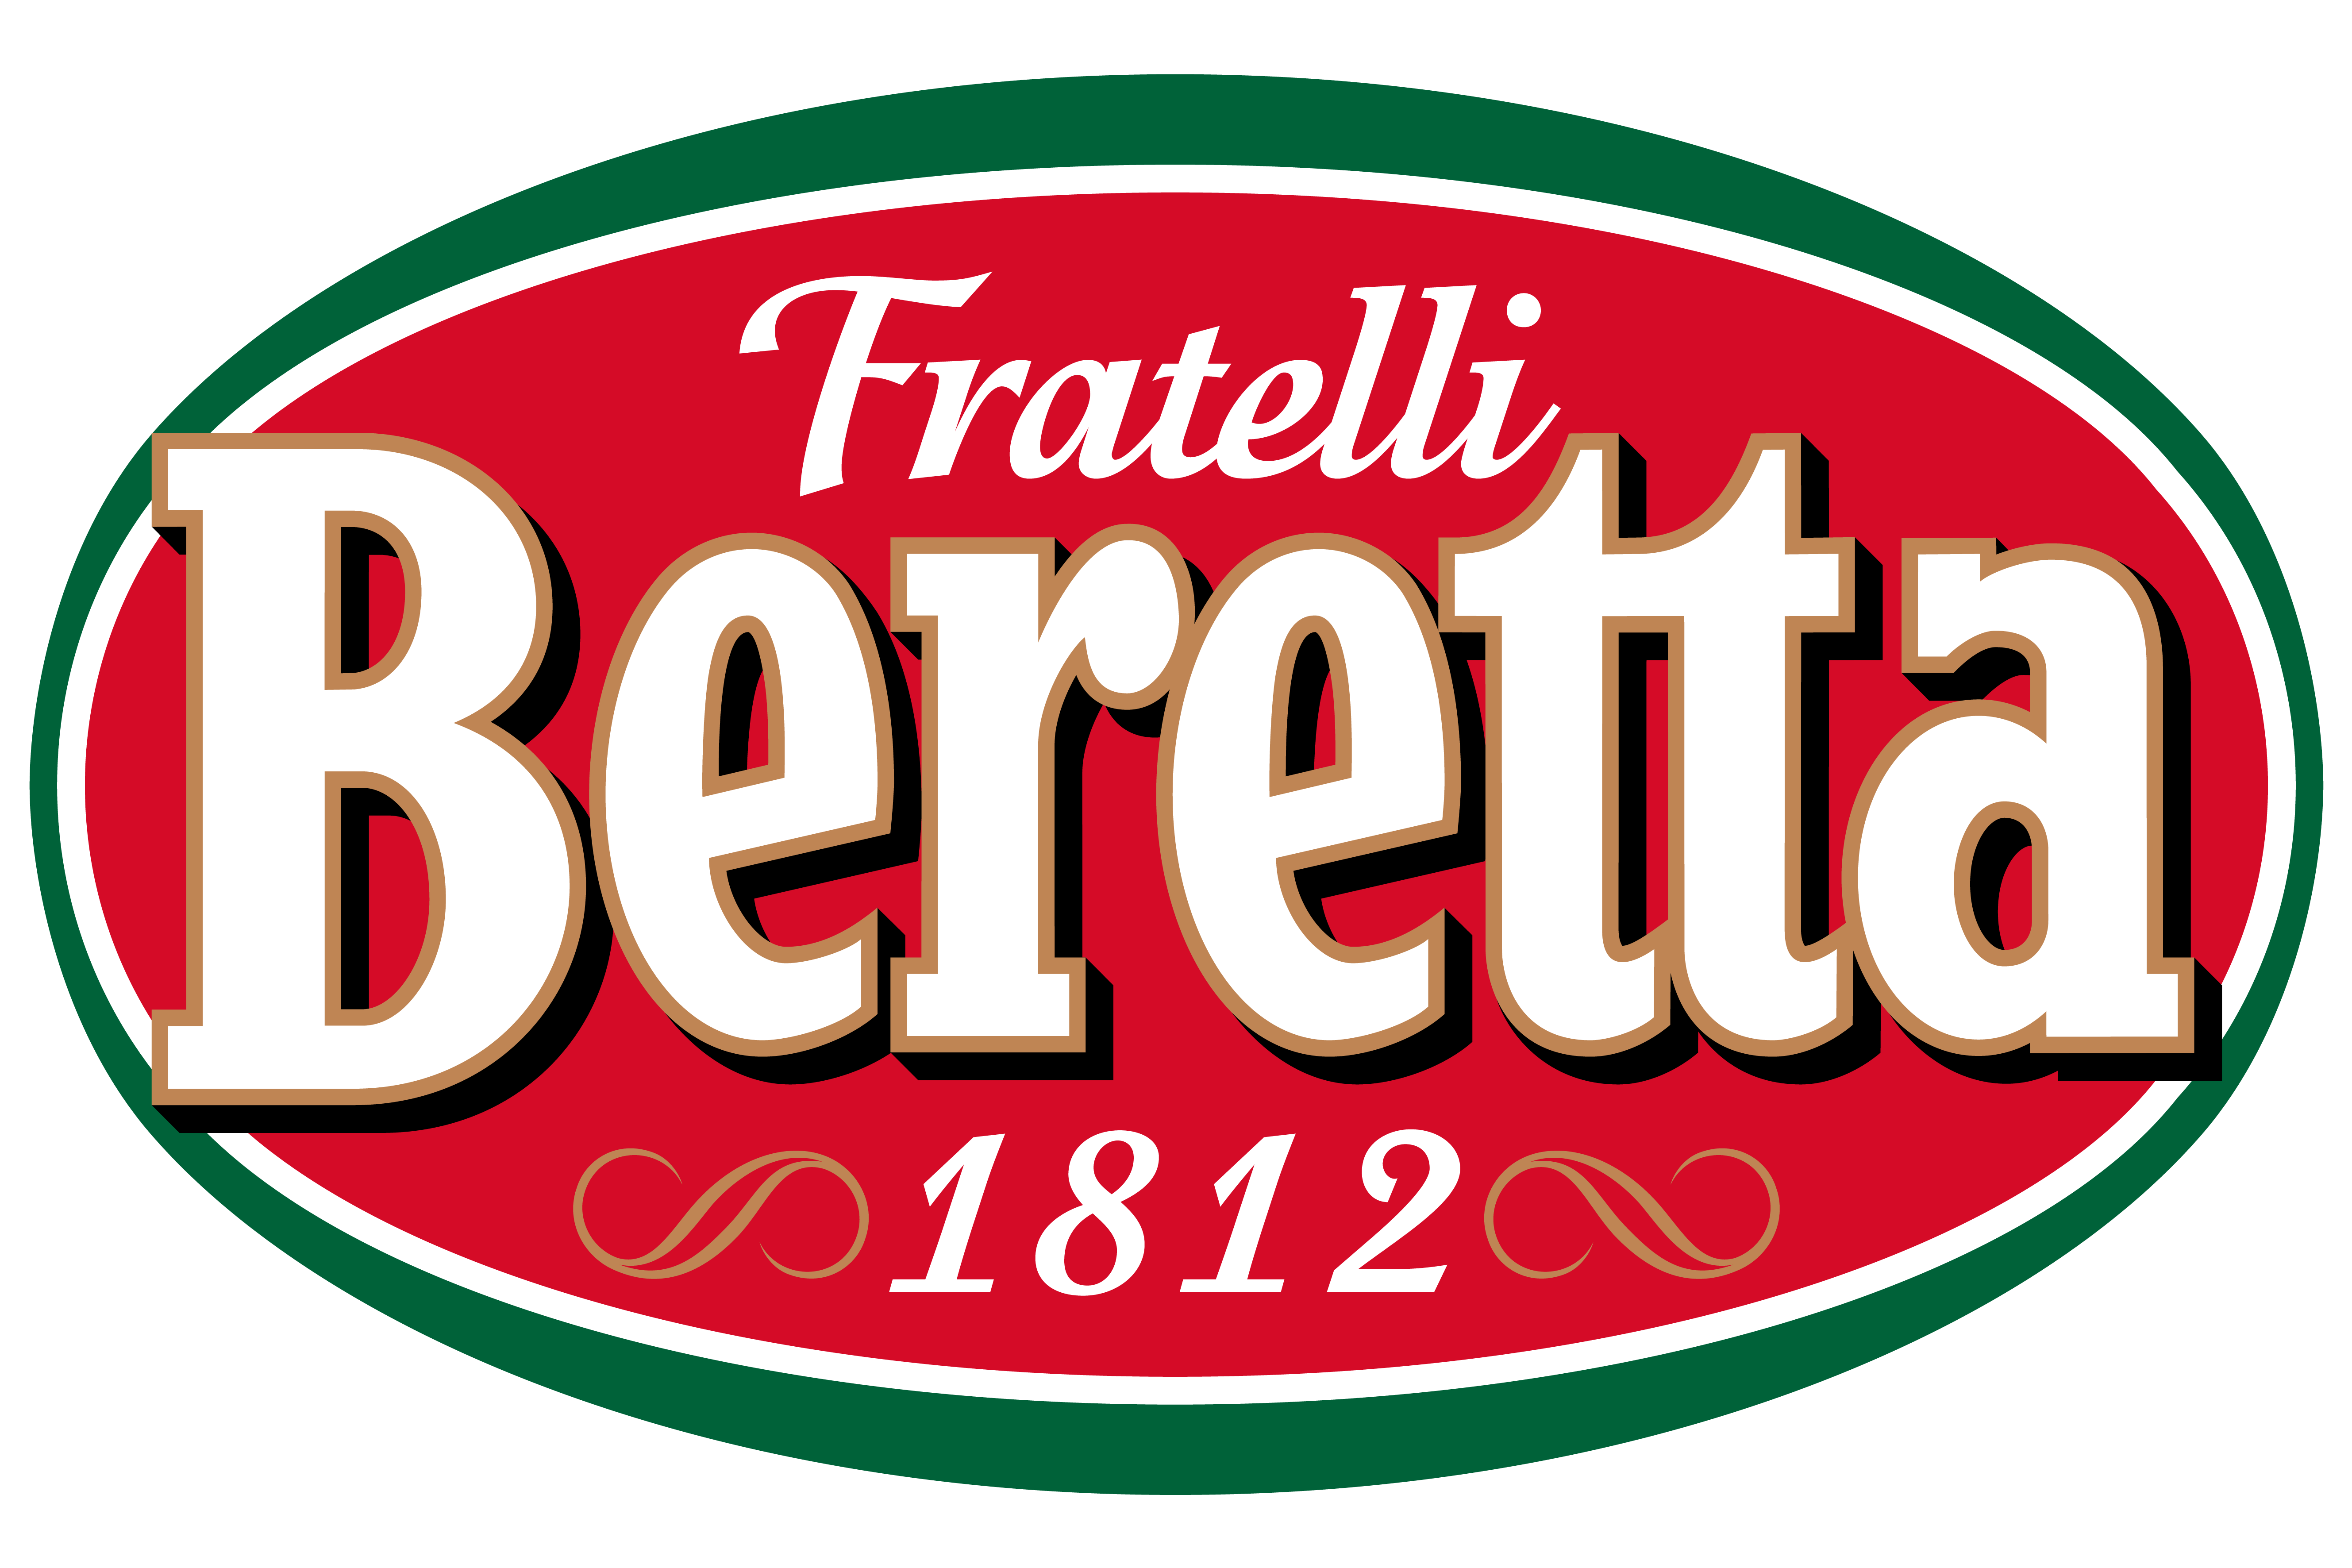 Fratelli Beretta